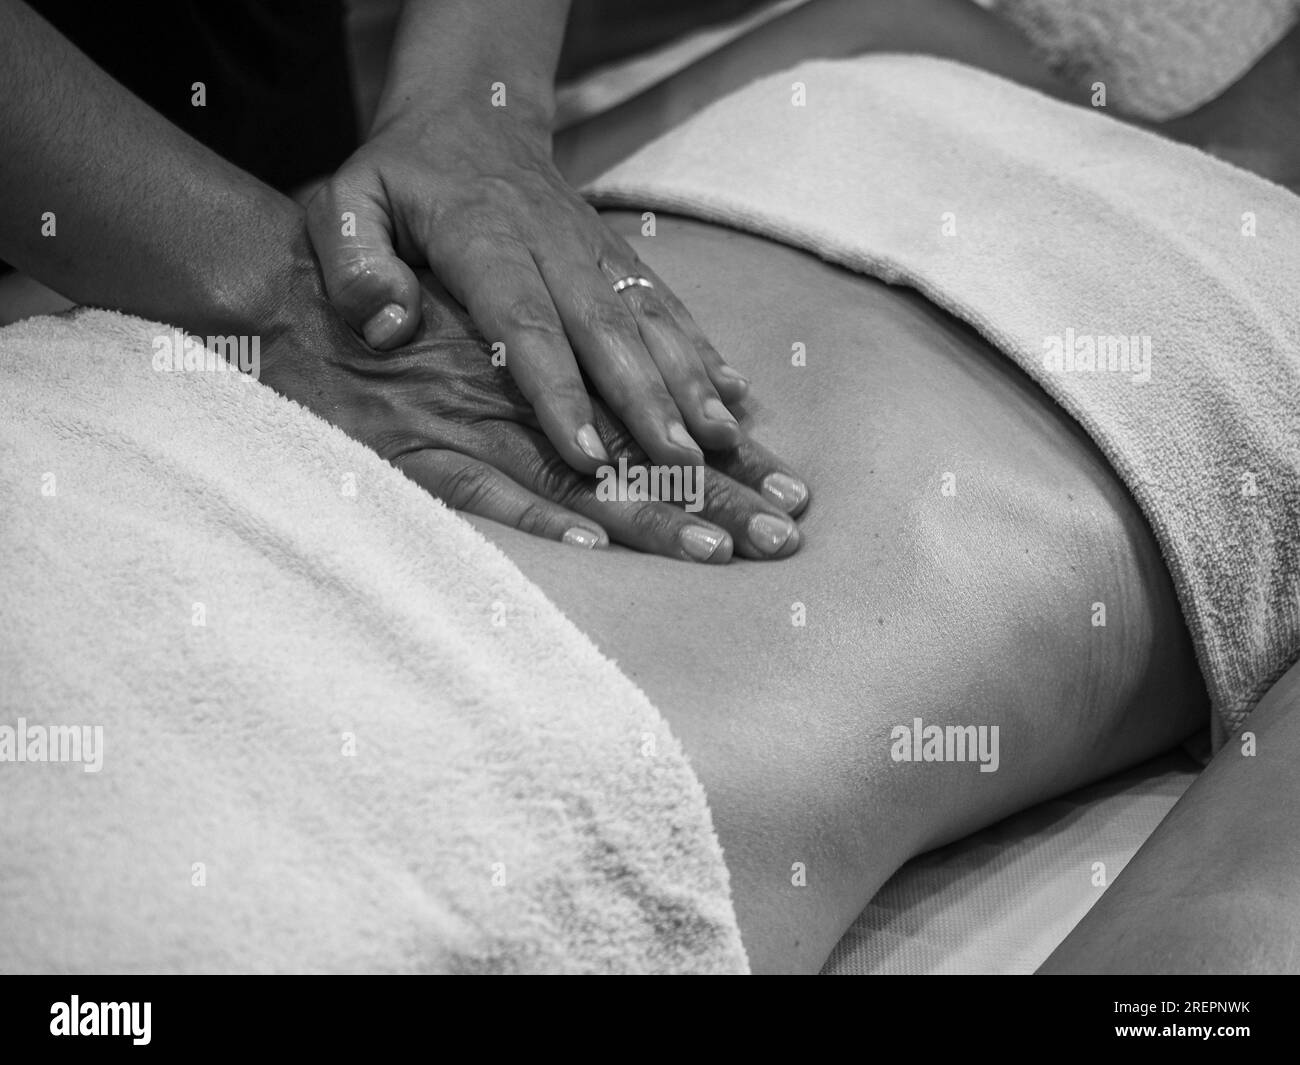 Cierre las manos del quiropráctico o masajista que hace un masaje abdominal relajante a una mujer joven en forma acostada en la cabina del spa de bienestar. Foto de stock